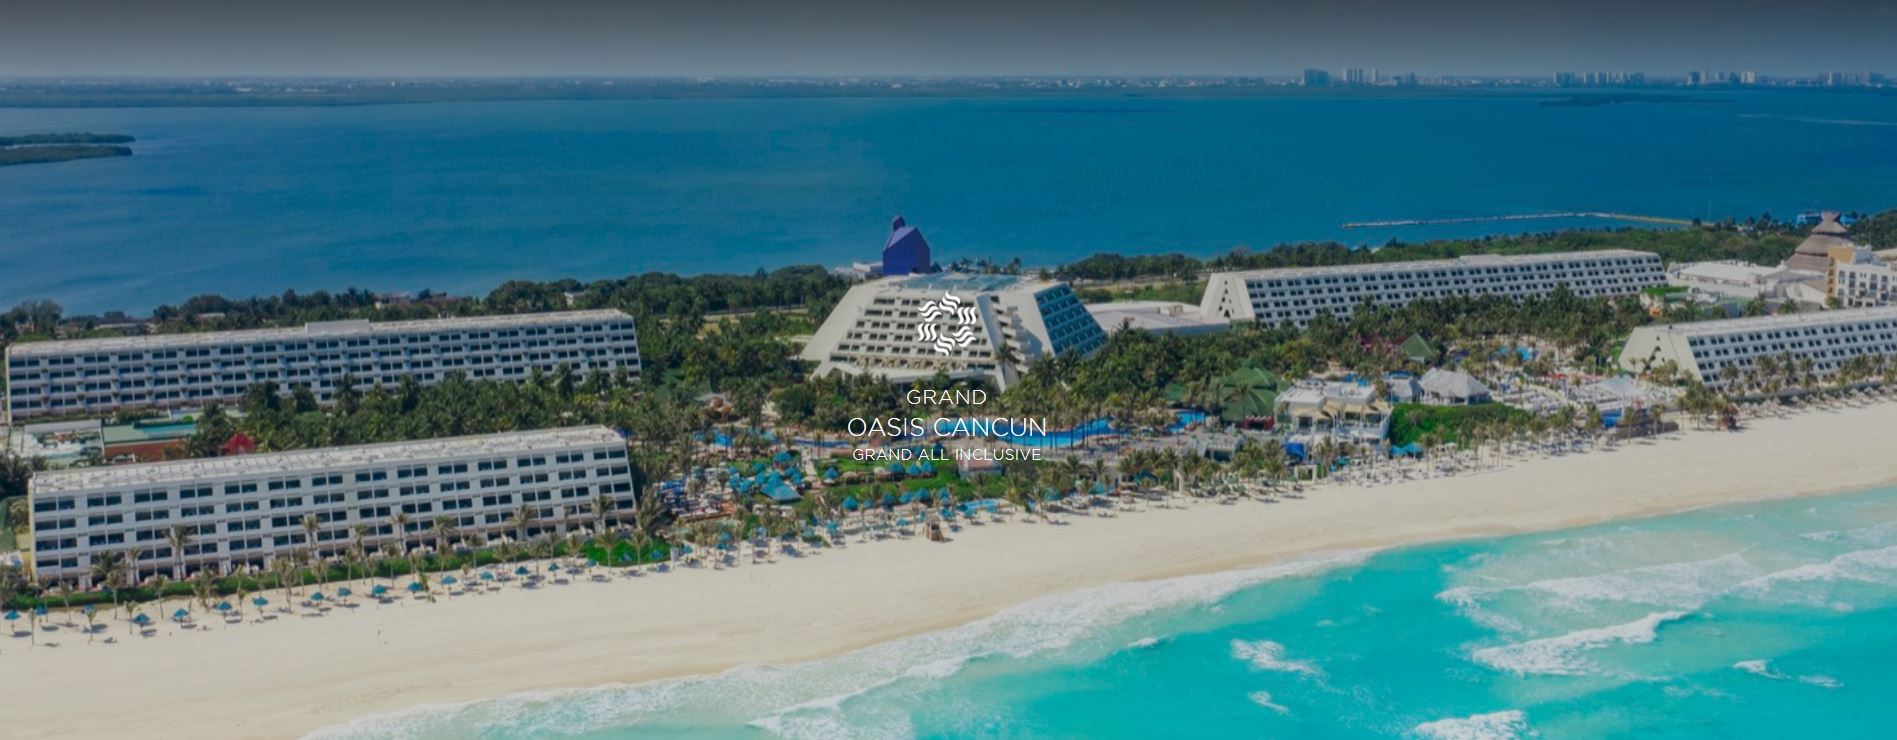 Hotel Grand Oasis Cancun Todo Incluido Riviera Maya Oferta Vacaciones Singles